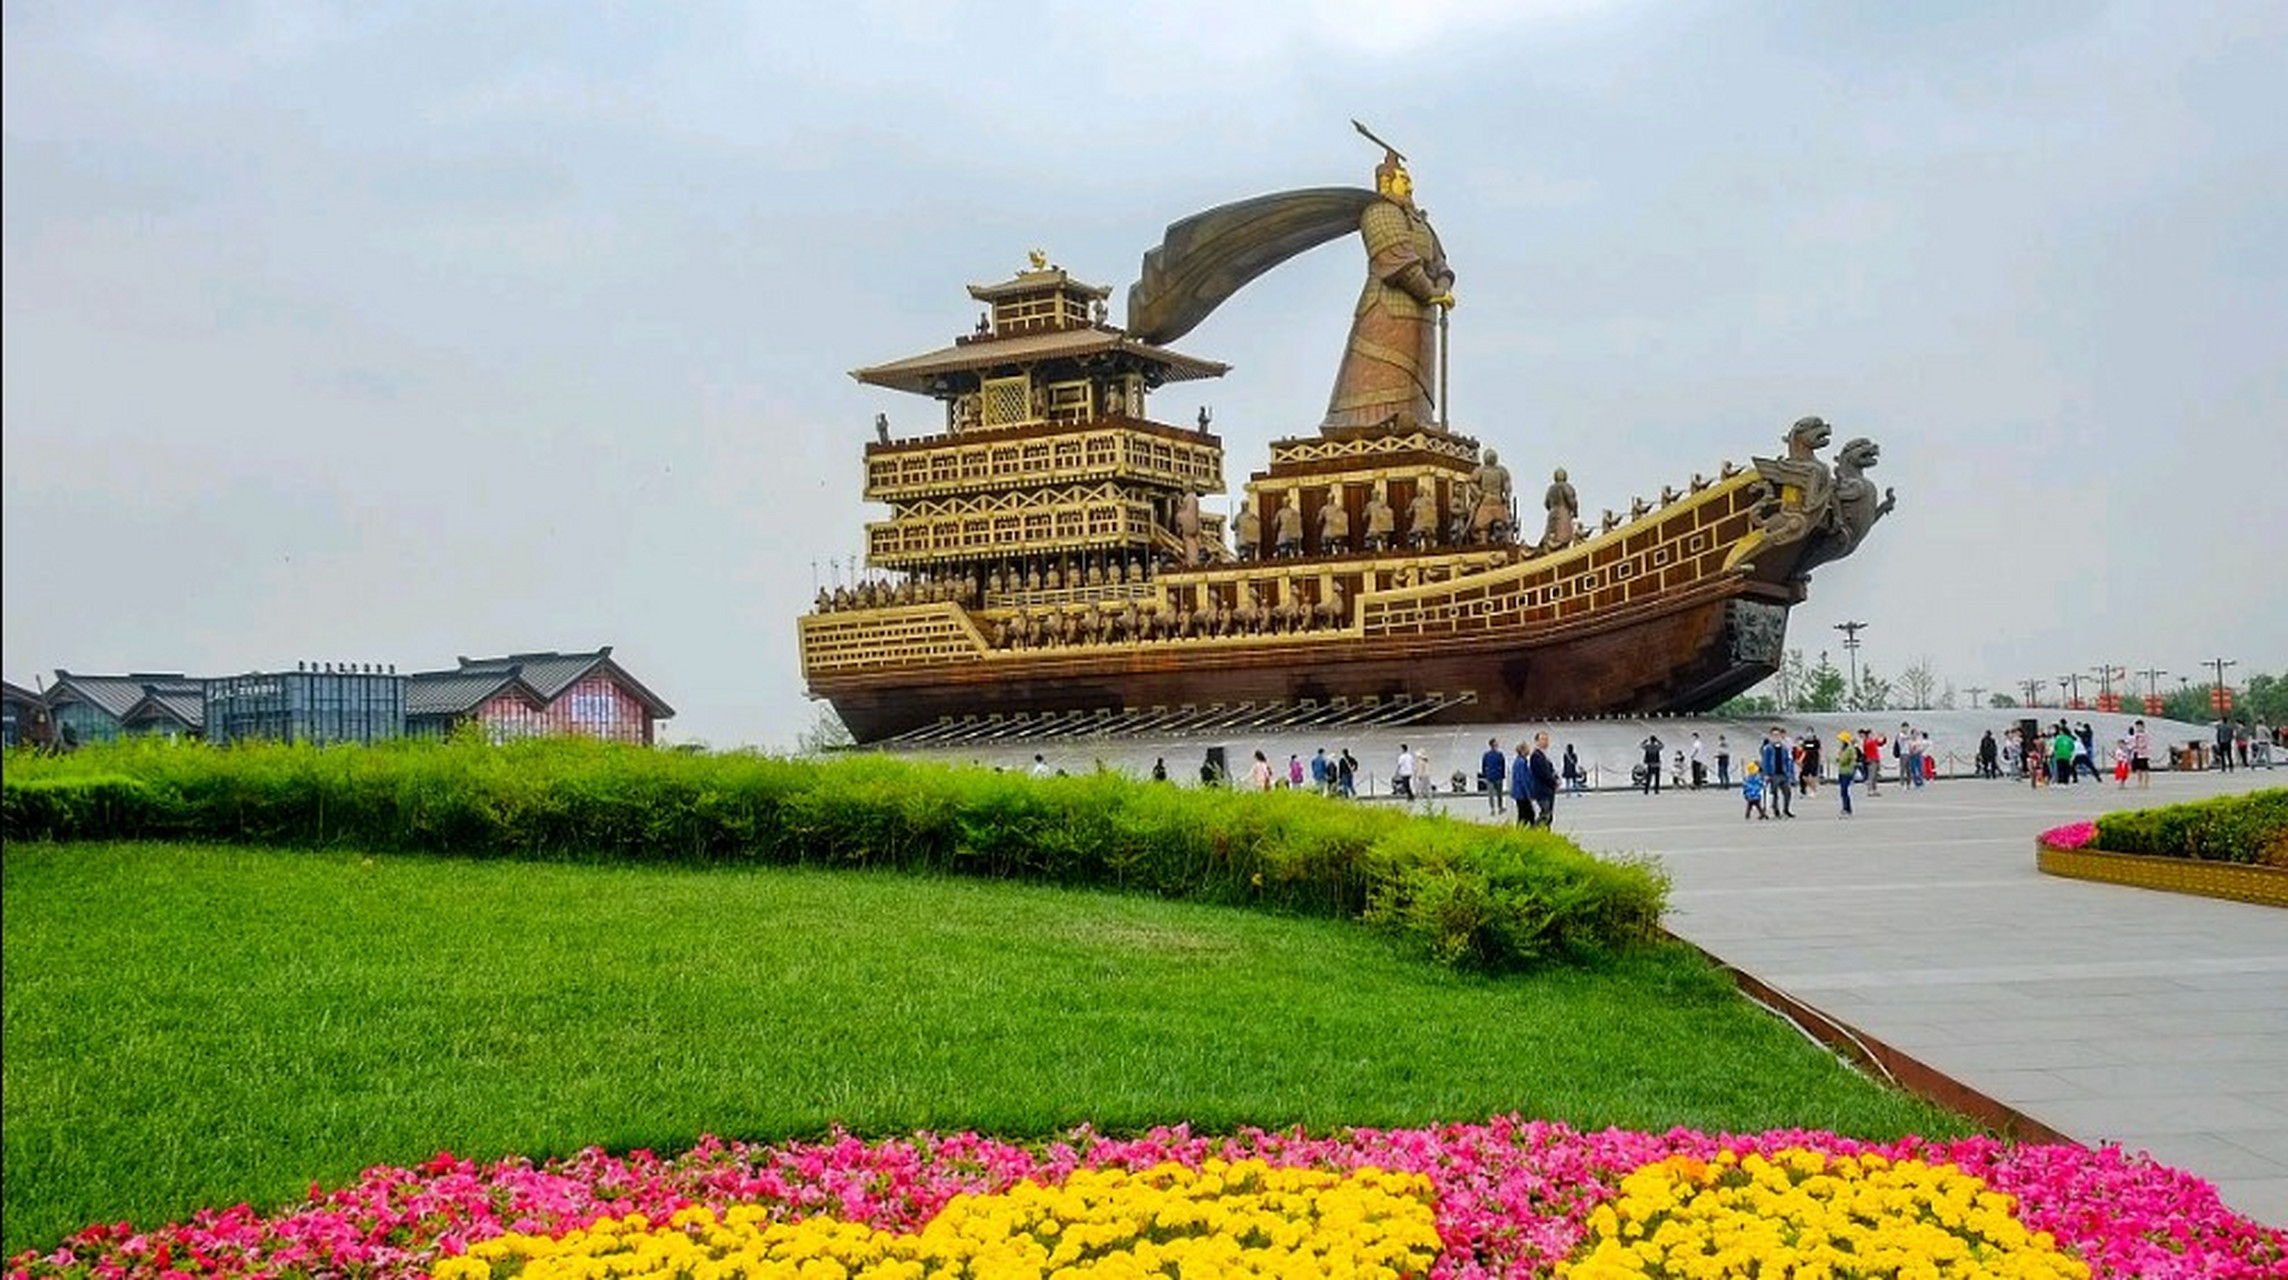 西安昆明池七夕公园是一个著名的文化景点,位于陕西省西安市西南部